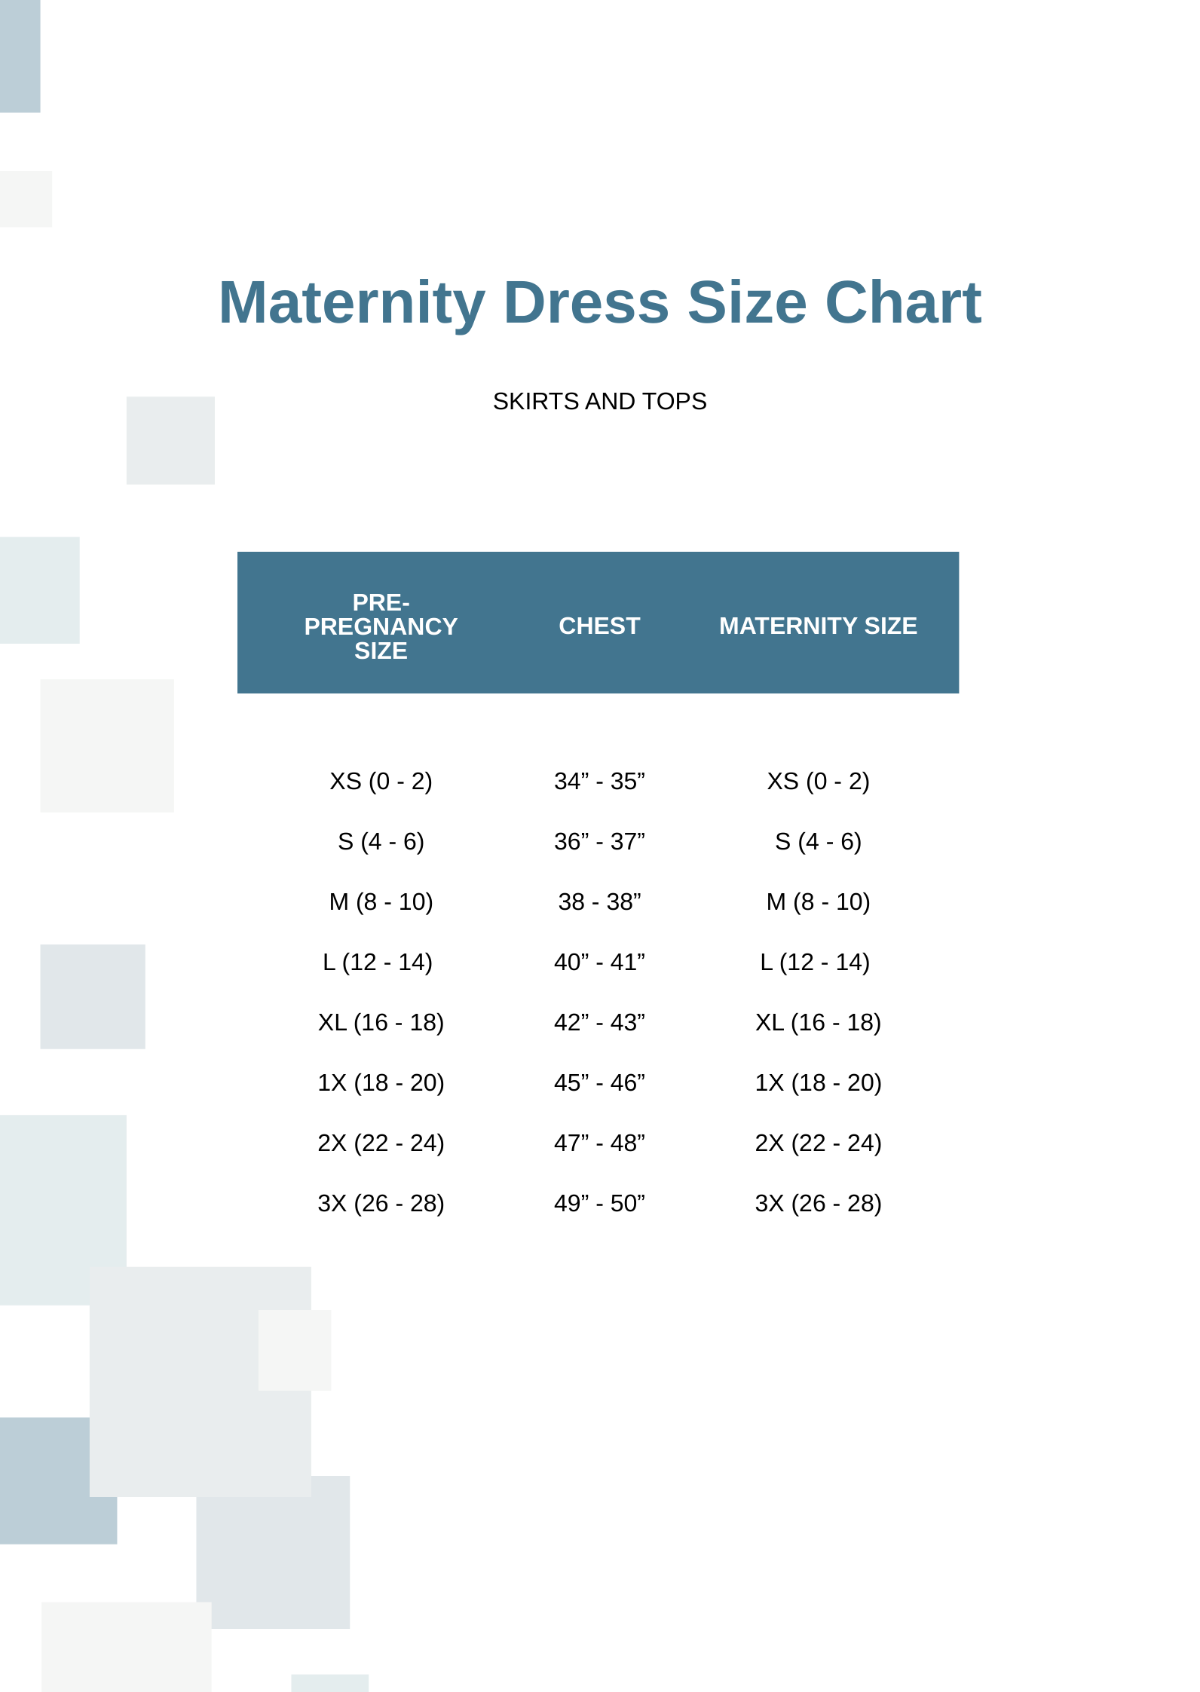 Maternity Dress Size Chart Template